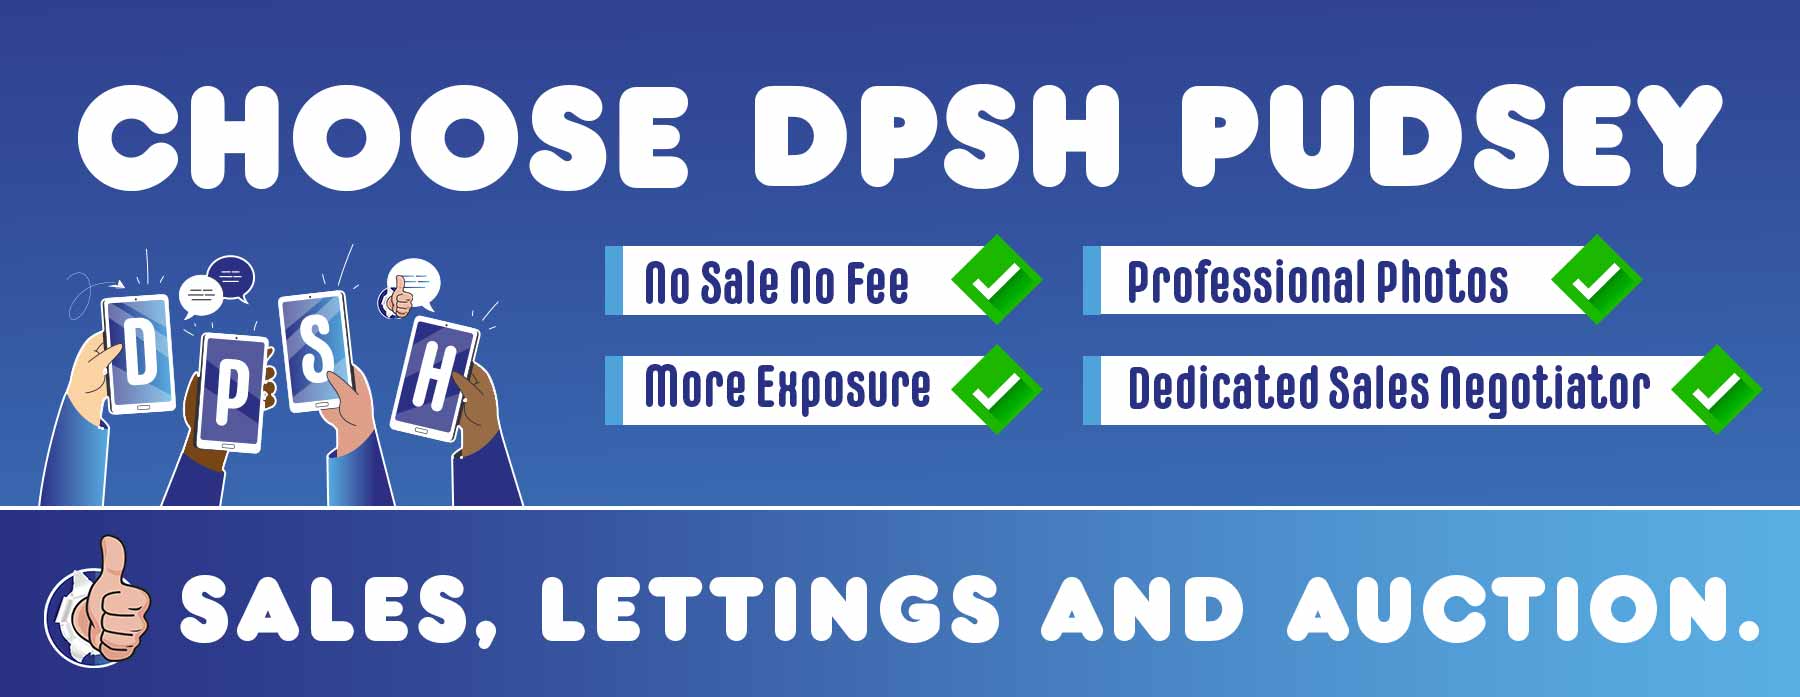 Choose-DPSH-Pudsey-estate-agents-Leeds